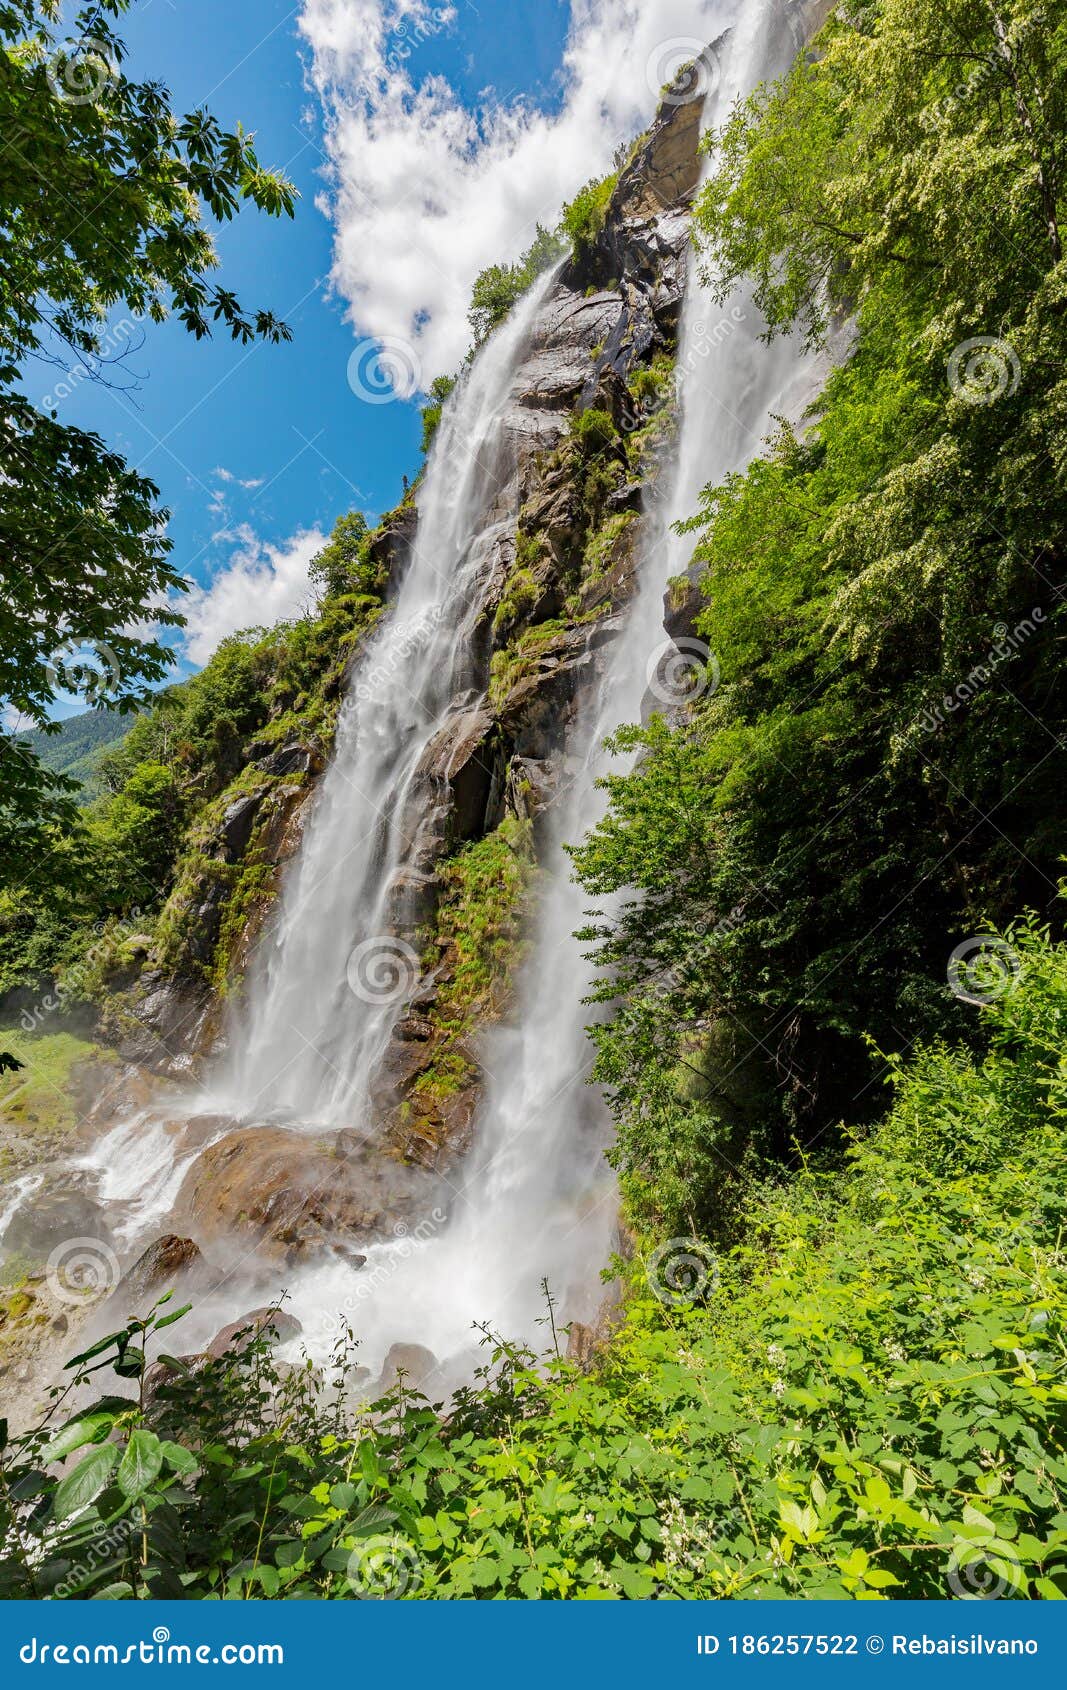 acqua fraggia waterfalls in borgonuovo - val bregaglia it